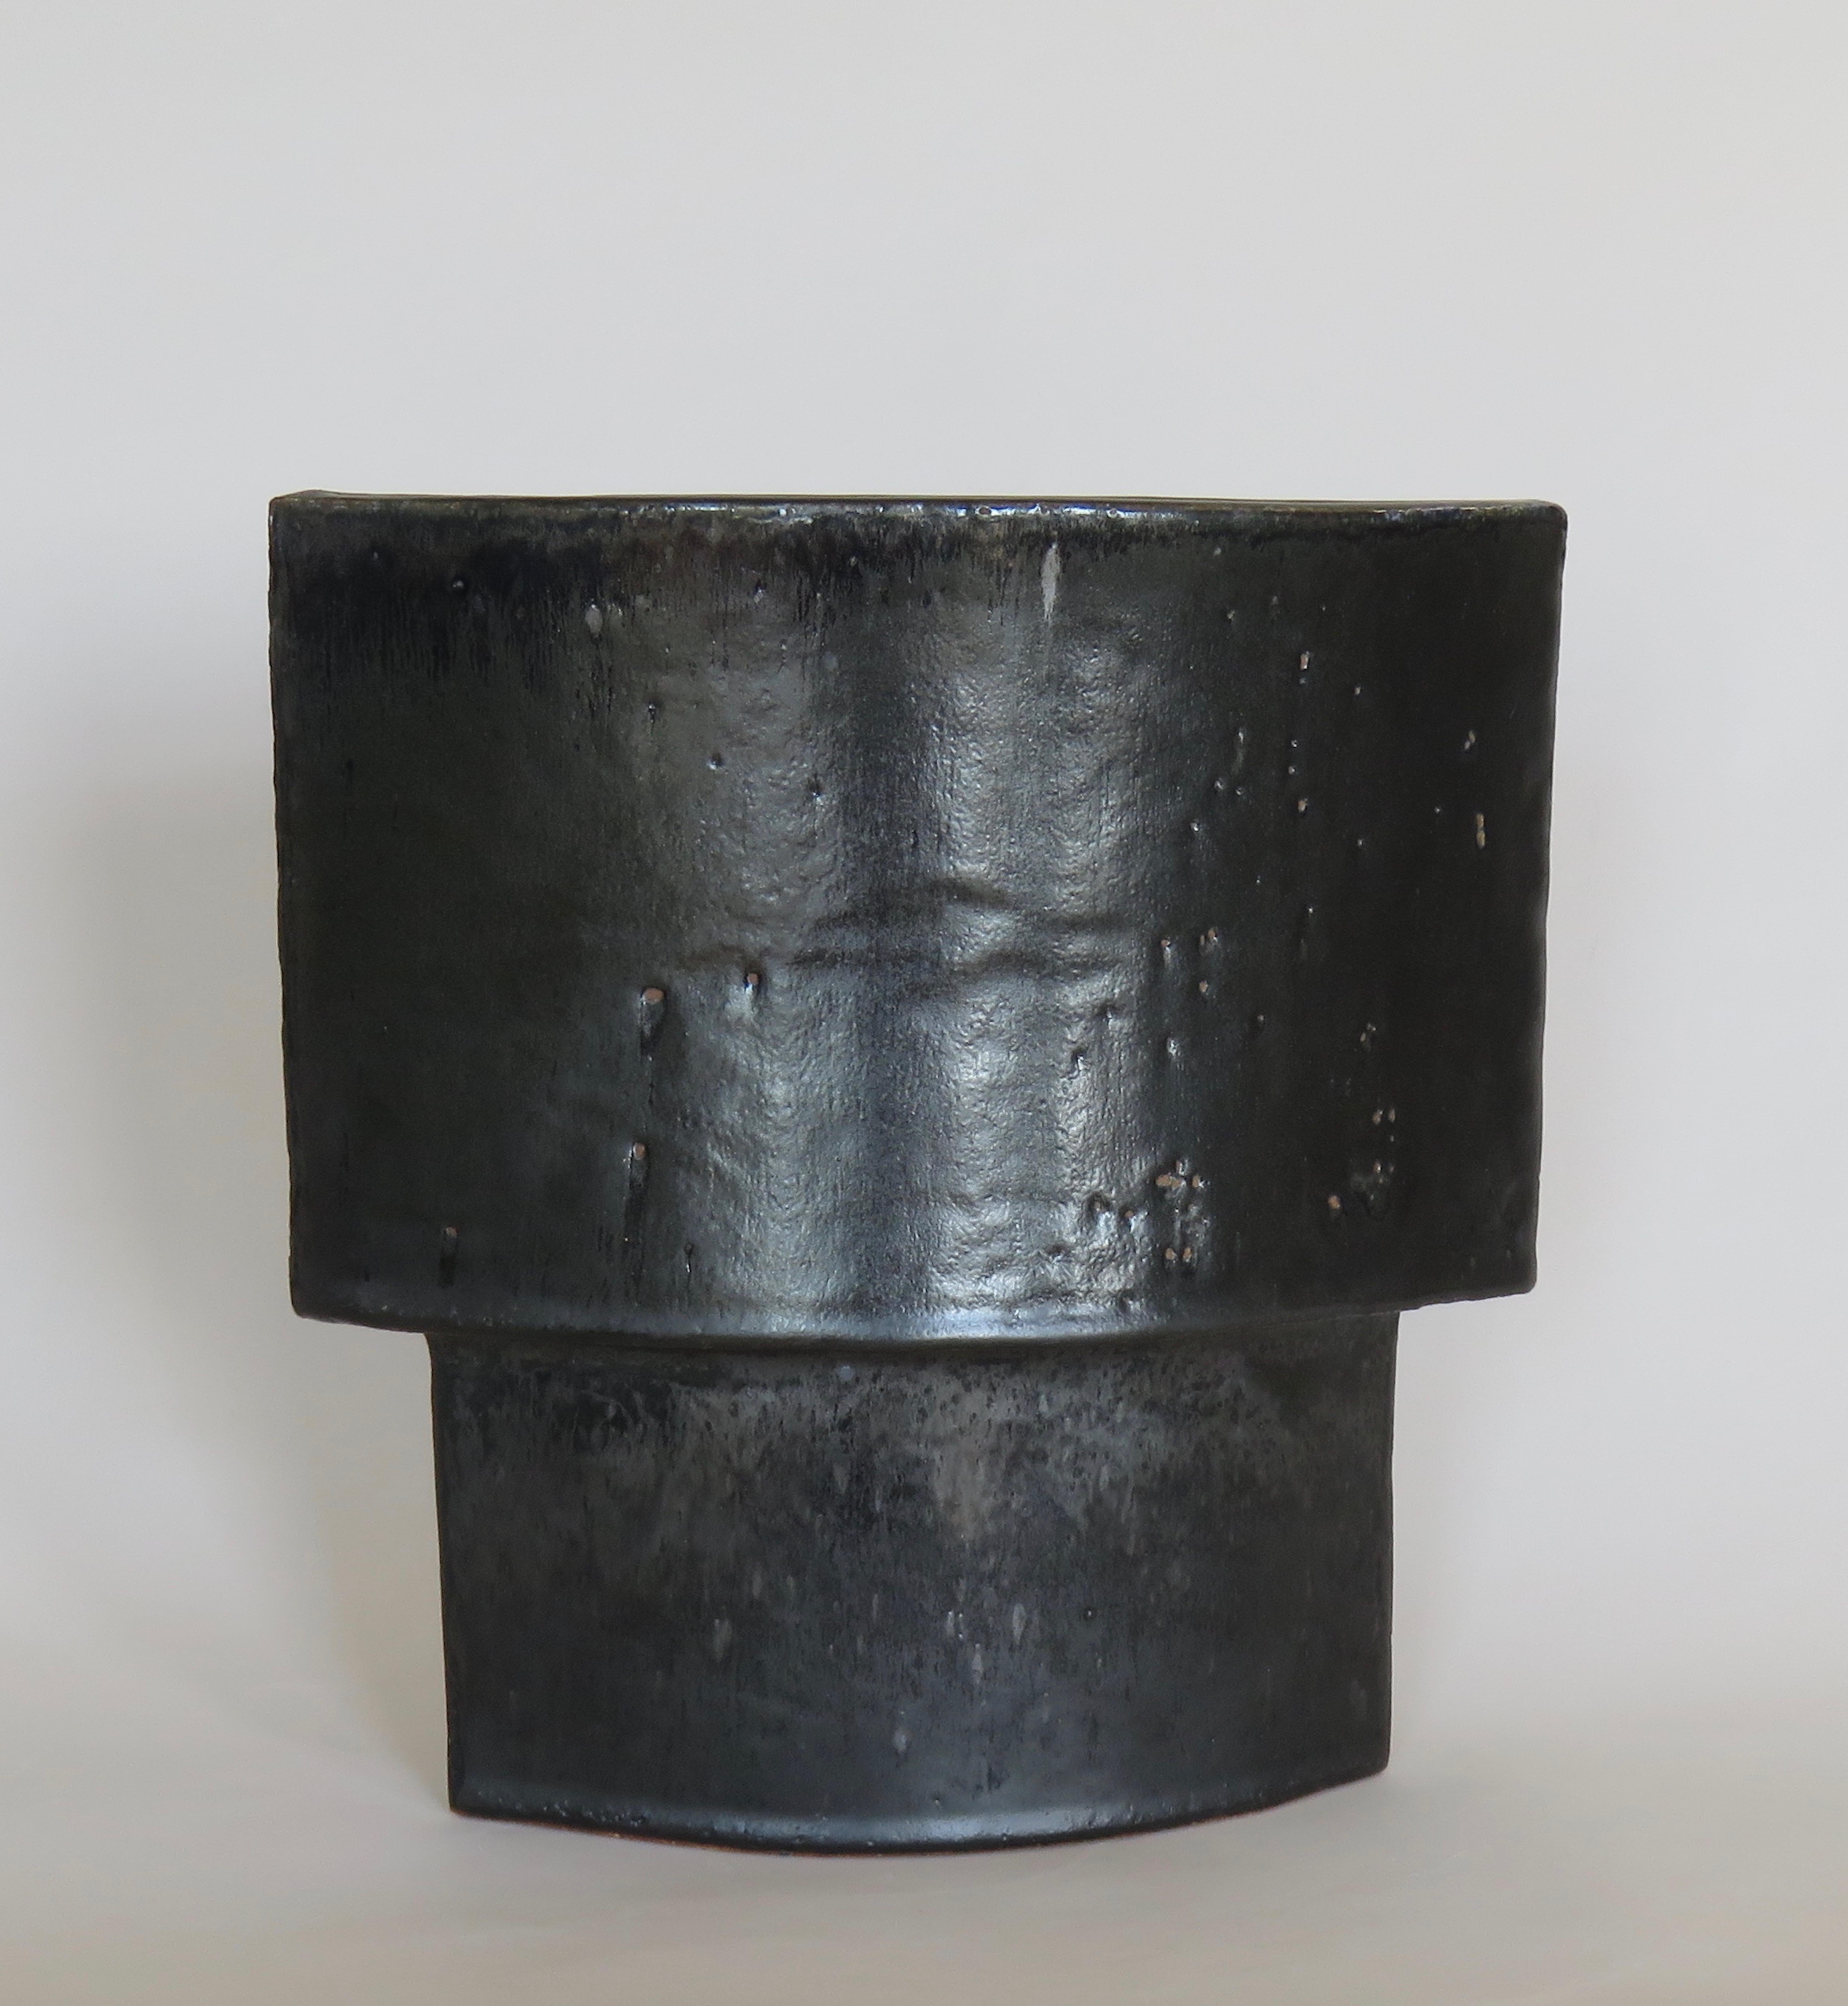 American Large Hand Built Ceramic Vase, Architectural Construction in Mottled Black Glaze